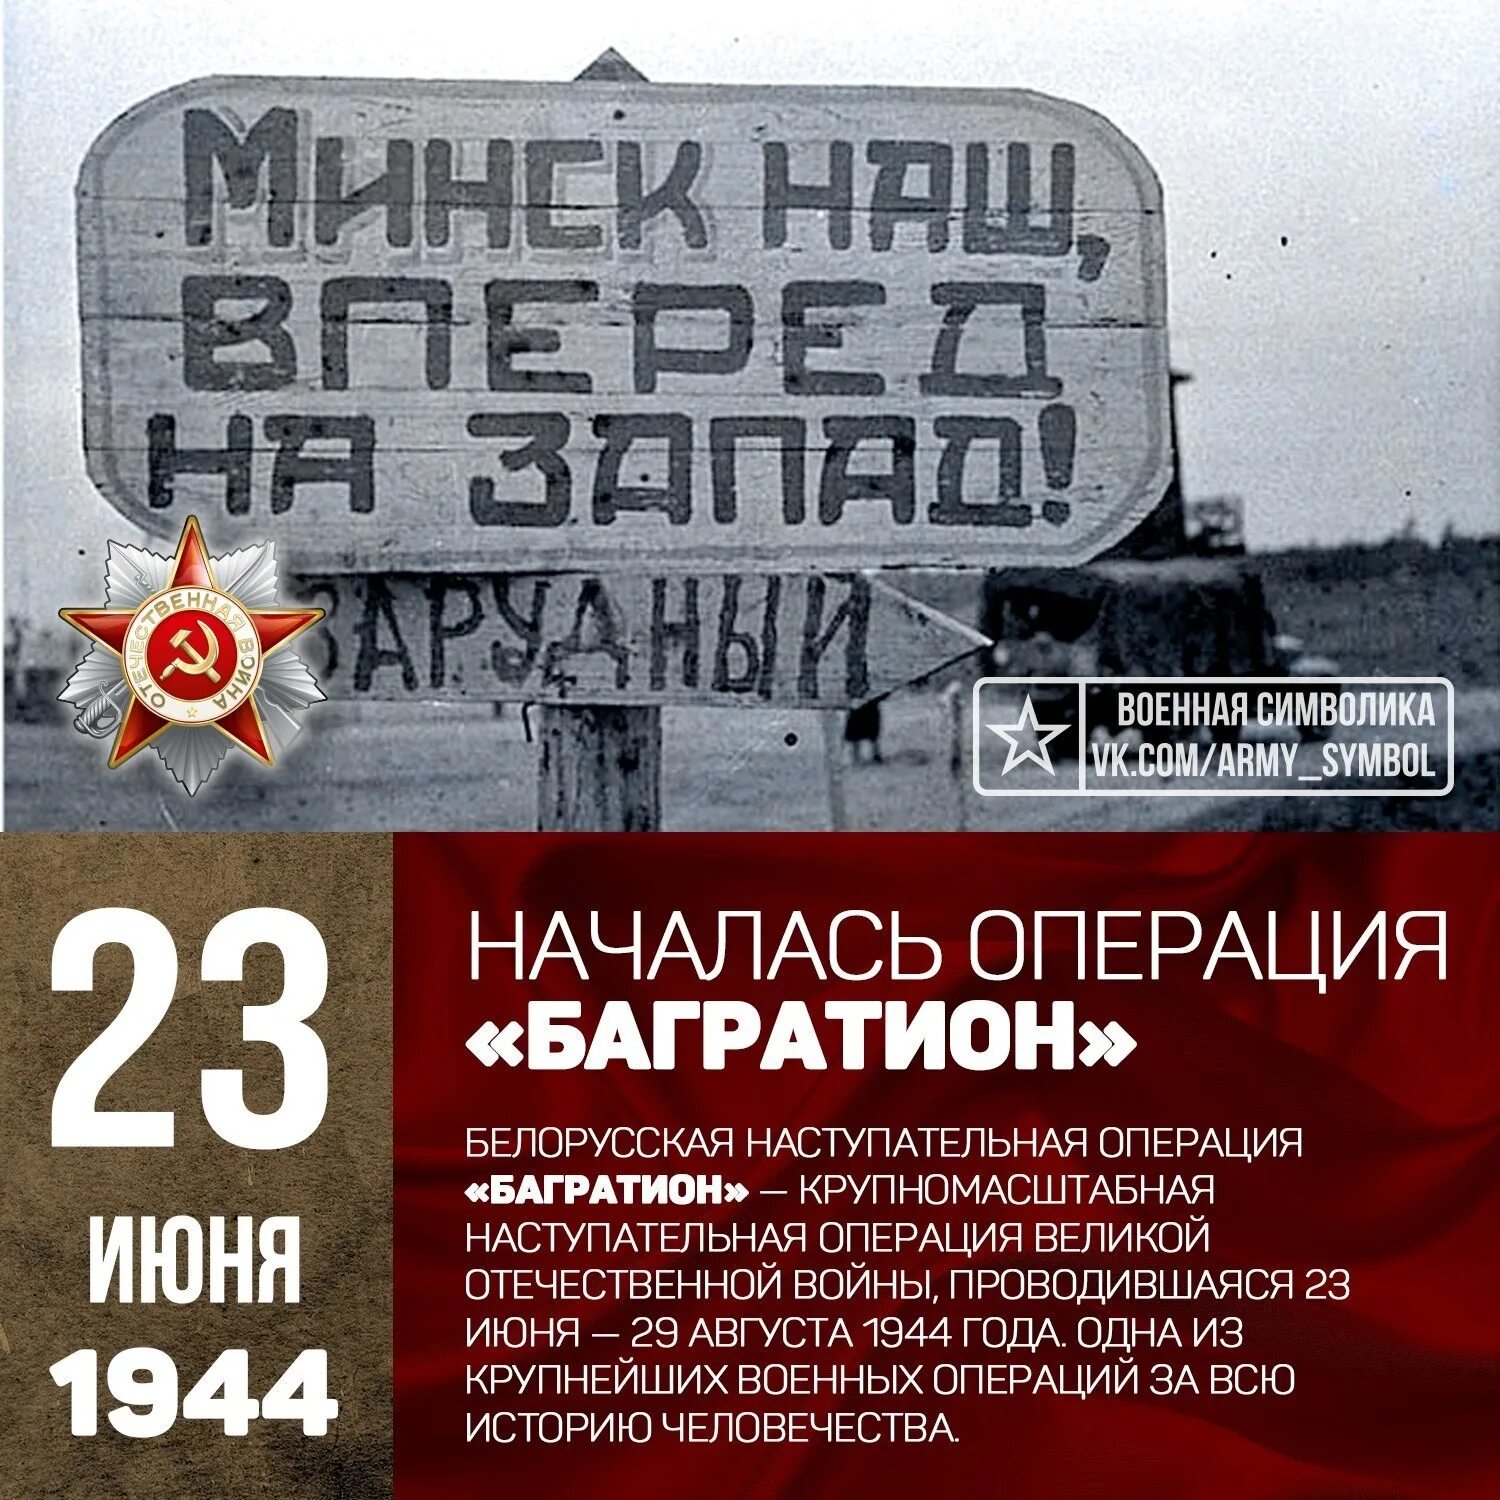 Операция багратион минск. Белорусская операция 23 июня 29 августа 1944. 23 Июня 1944 года началась операция Багратион. 23 Июня началась белорусская наступательная операция «Багратион». Белоруссия 1944 Багратион.